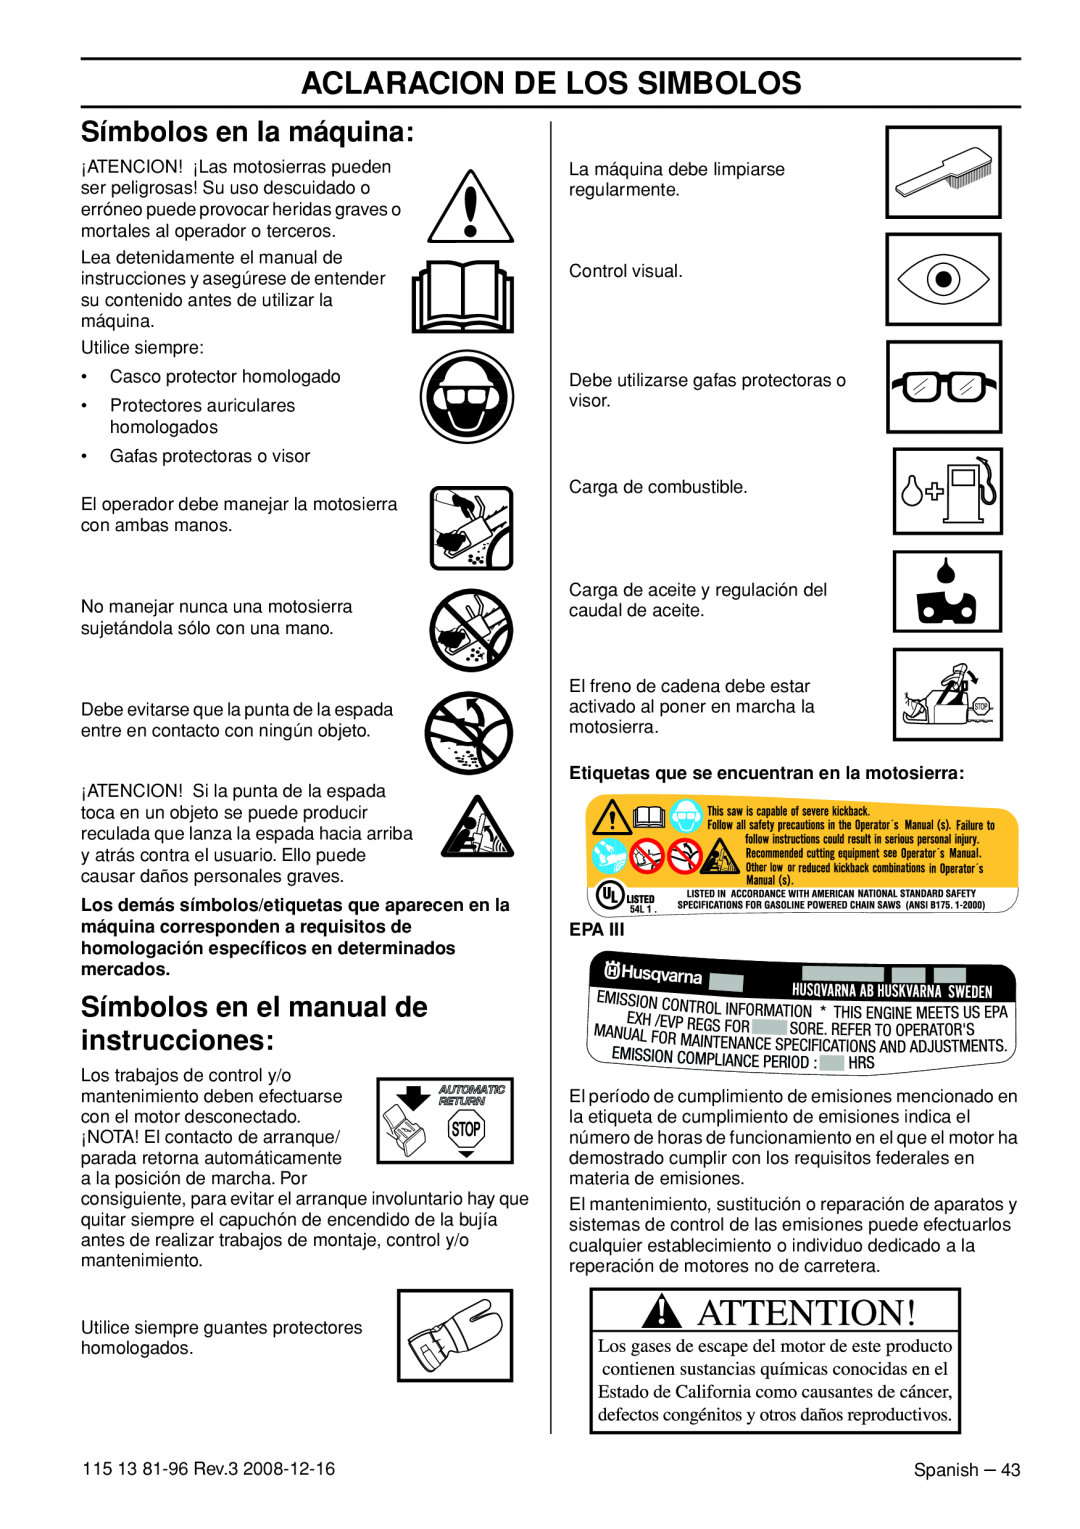 Husqvarna 115 13 81-96 Aclaracion De Los Simbolos, Símbolos en la máquina, Símbolos en el manual de instrucciones 